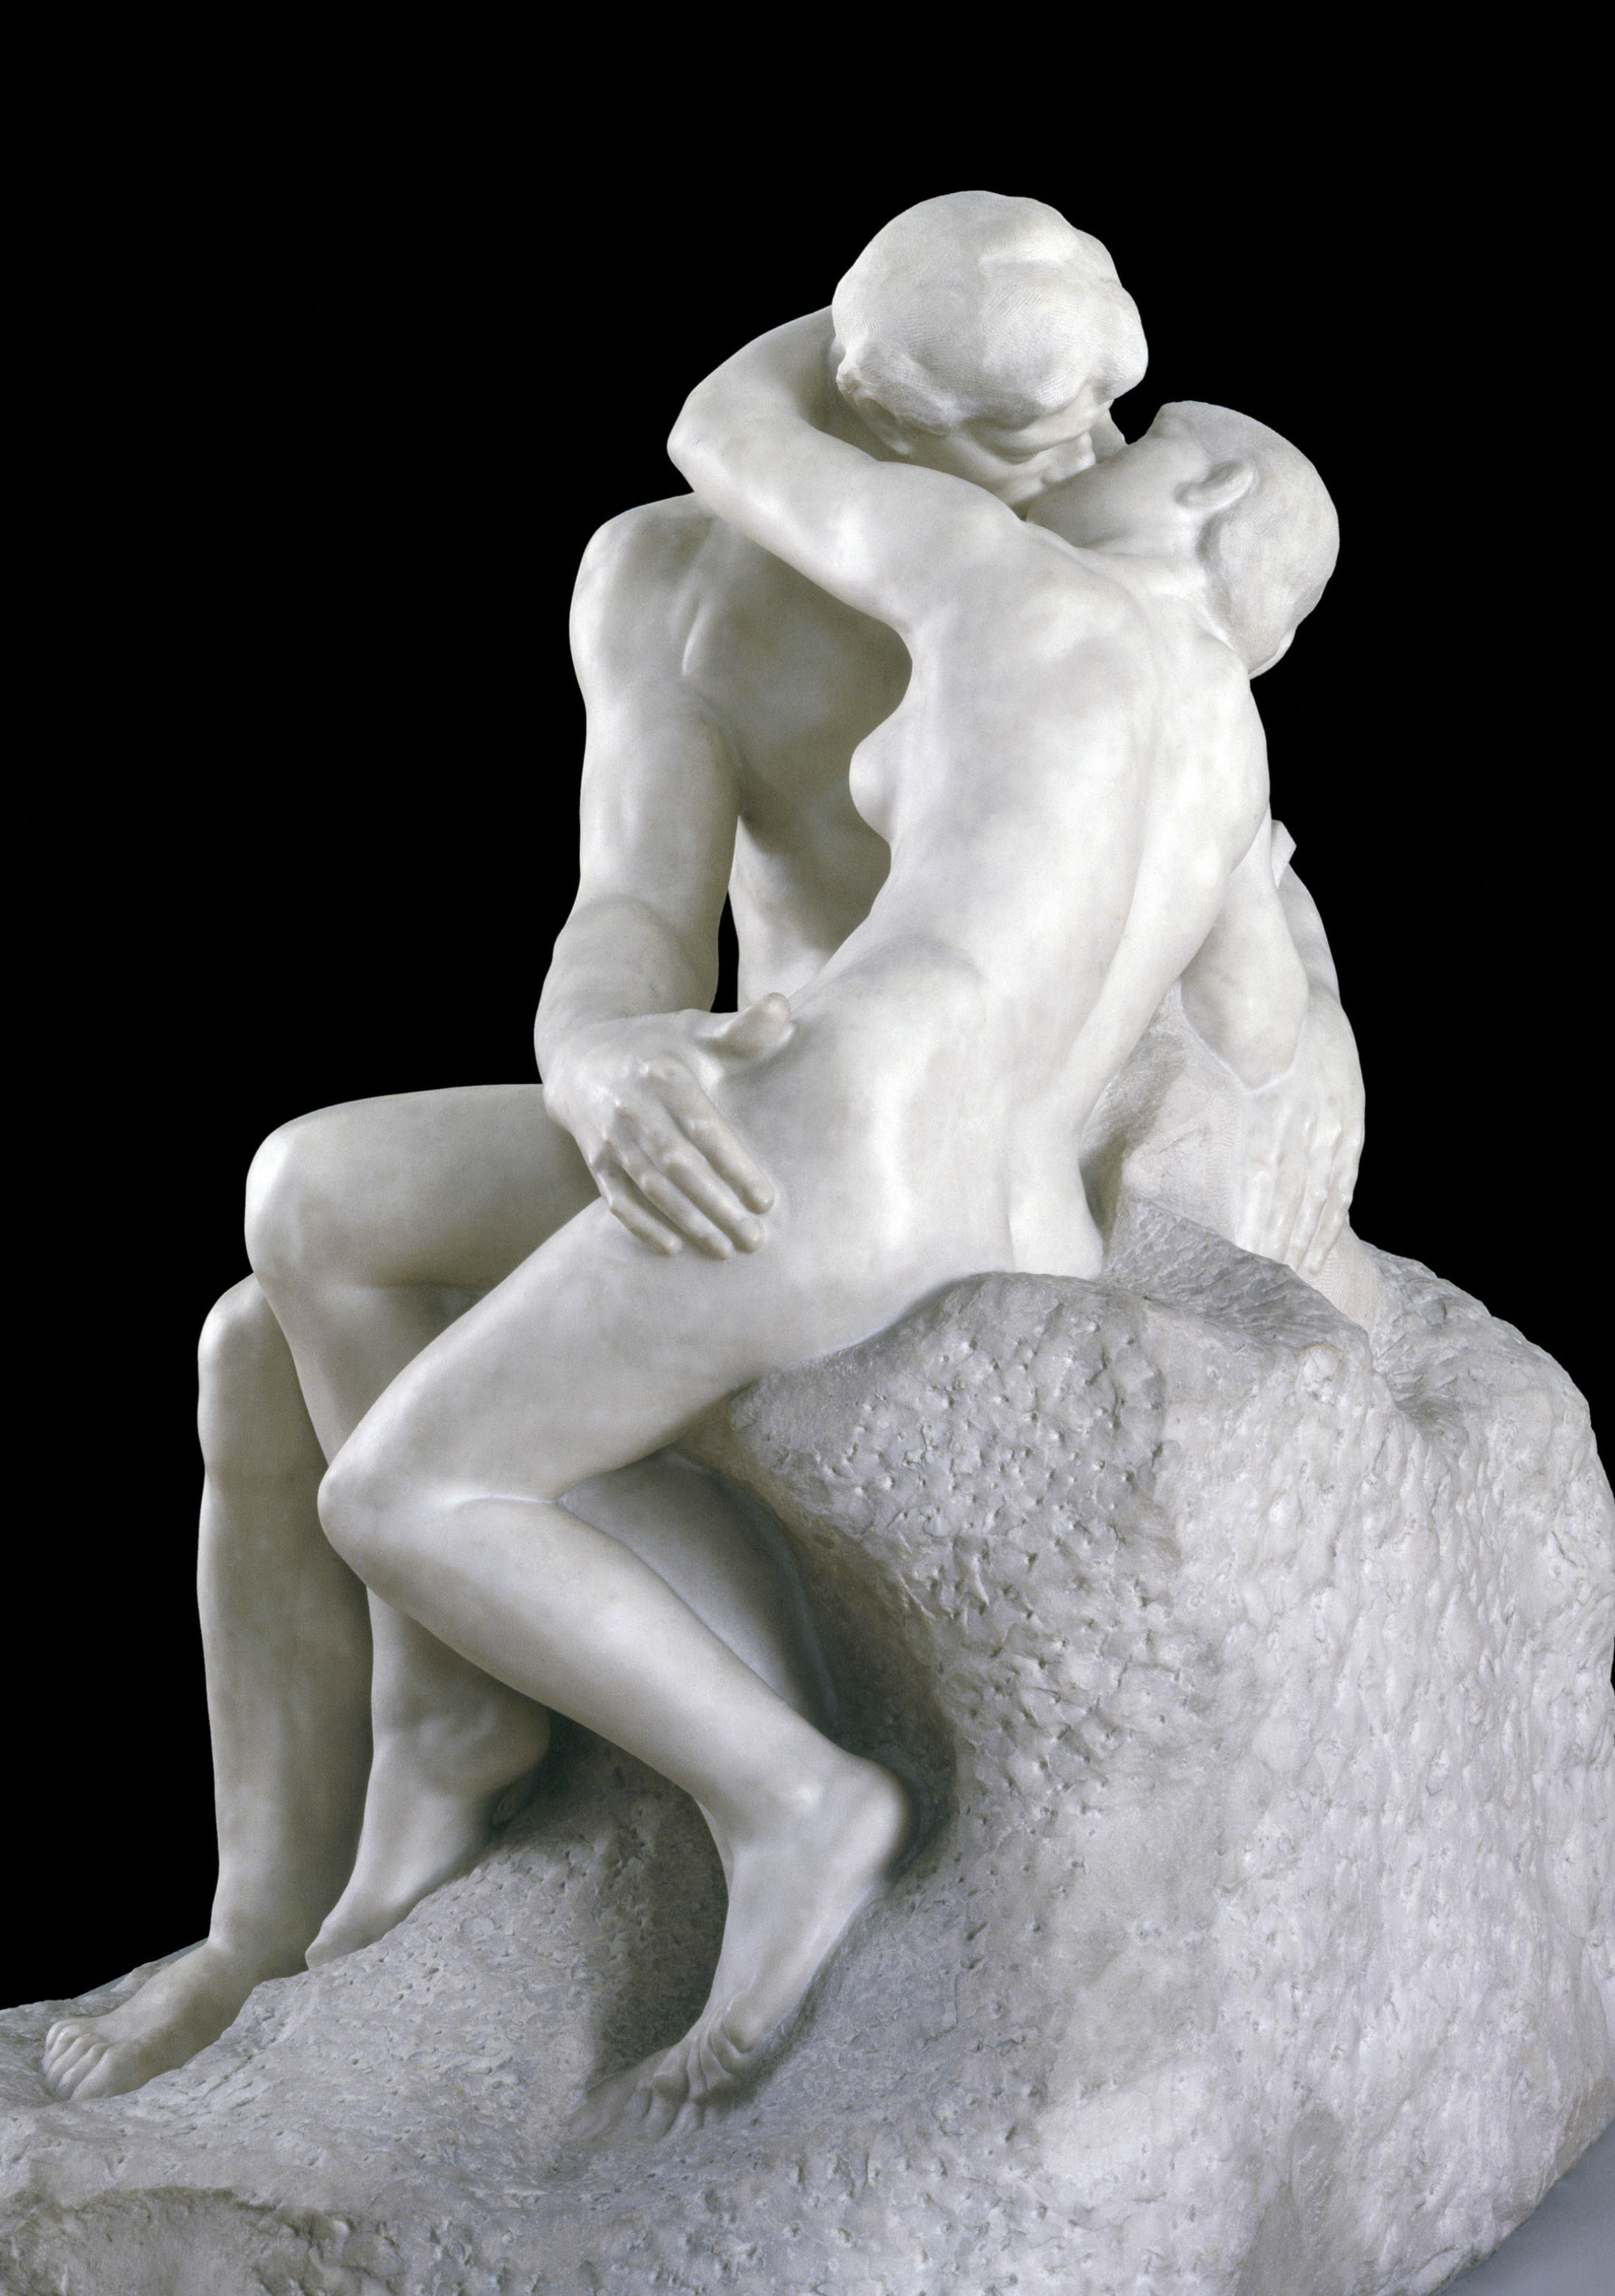 オーギュスト・ロダン 《接吻》 1901‐4年 ペンテリコン大理石 182.2×121.9×153cm